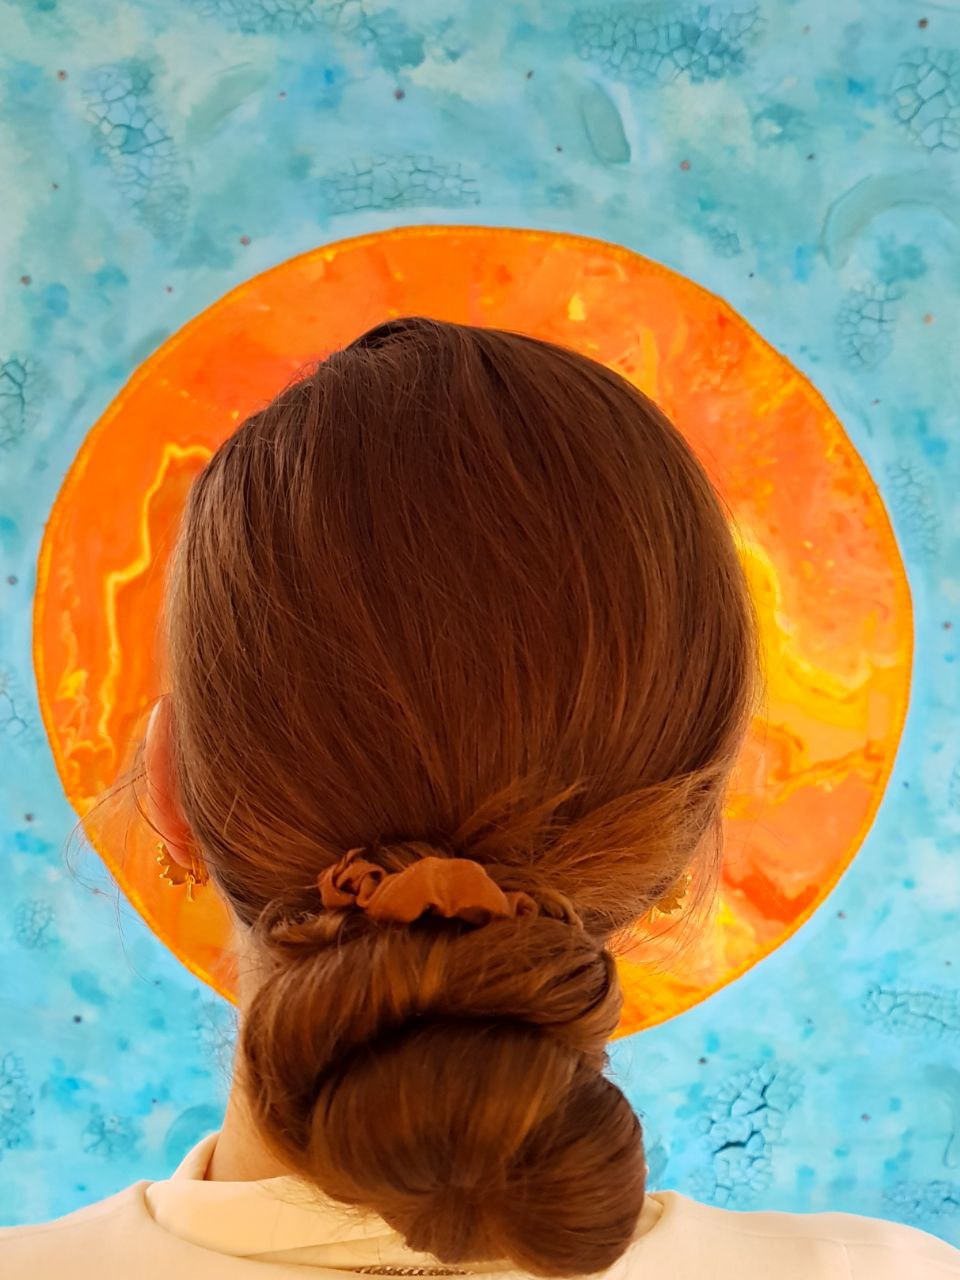 Eva Bouw voor schilderij 'the woman clothed with the sun'. Je ziet alleen de achterkant van Eva Bouw's hoofd, waarbij haar hoofd omcirkeld is dor de zon van het schilderij. 